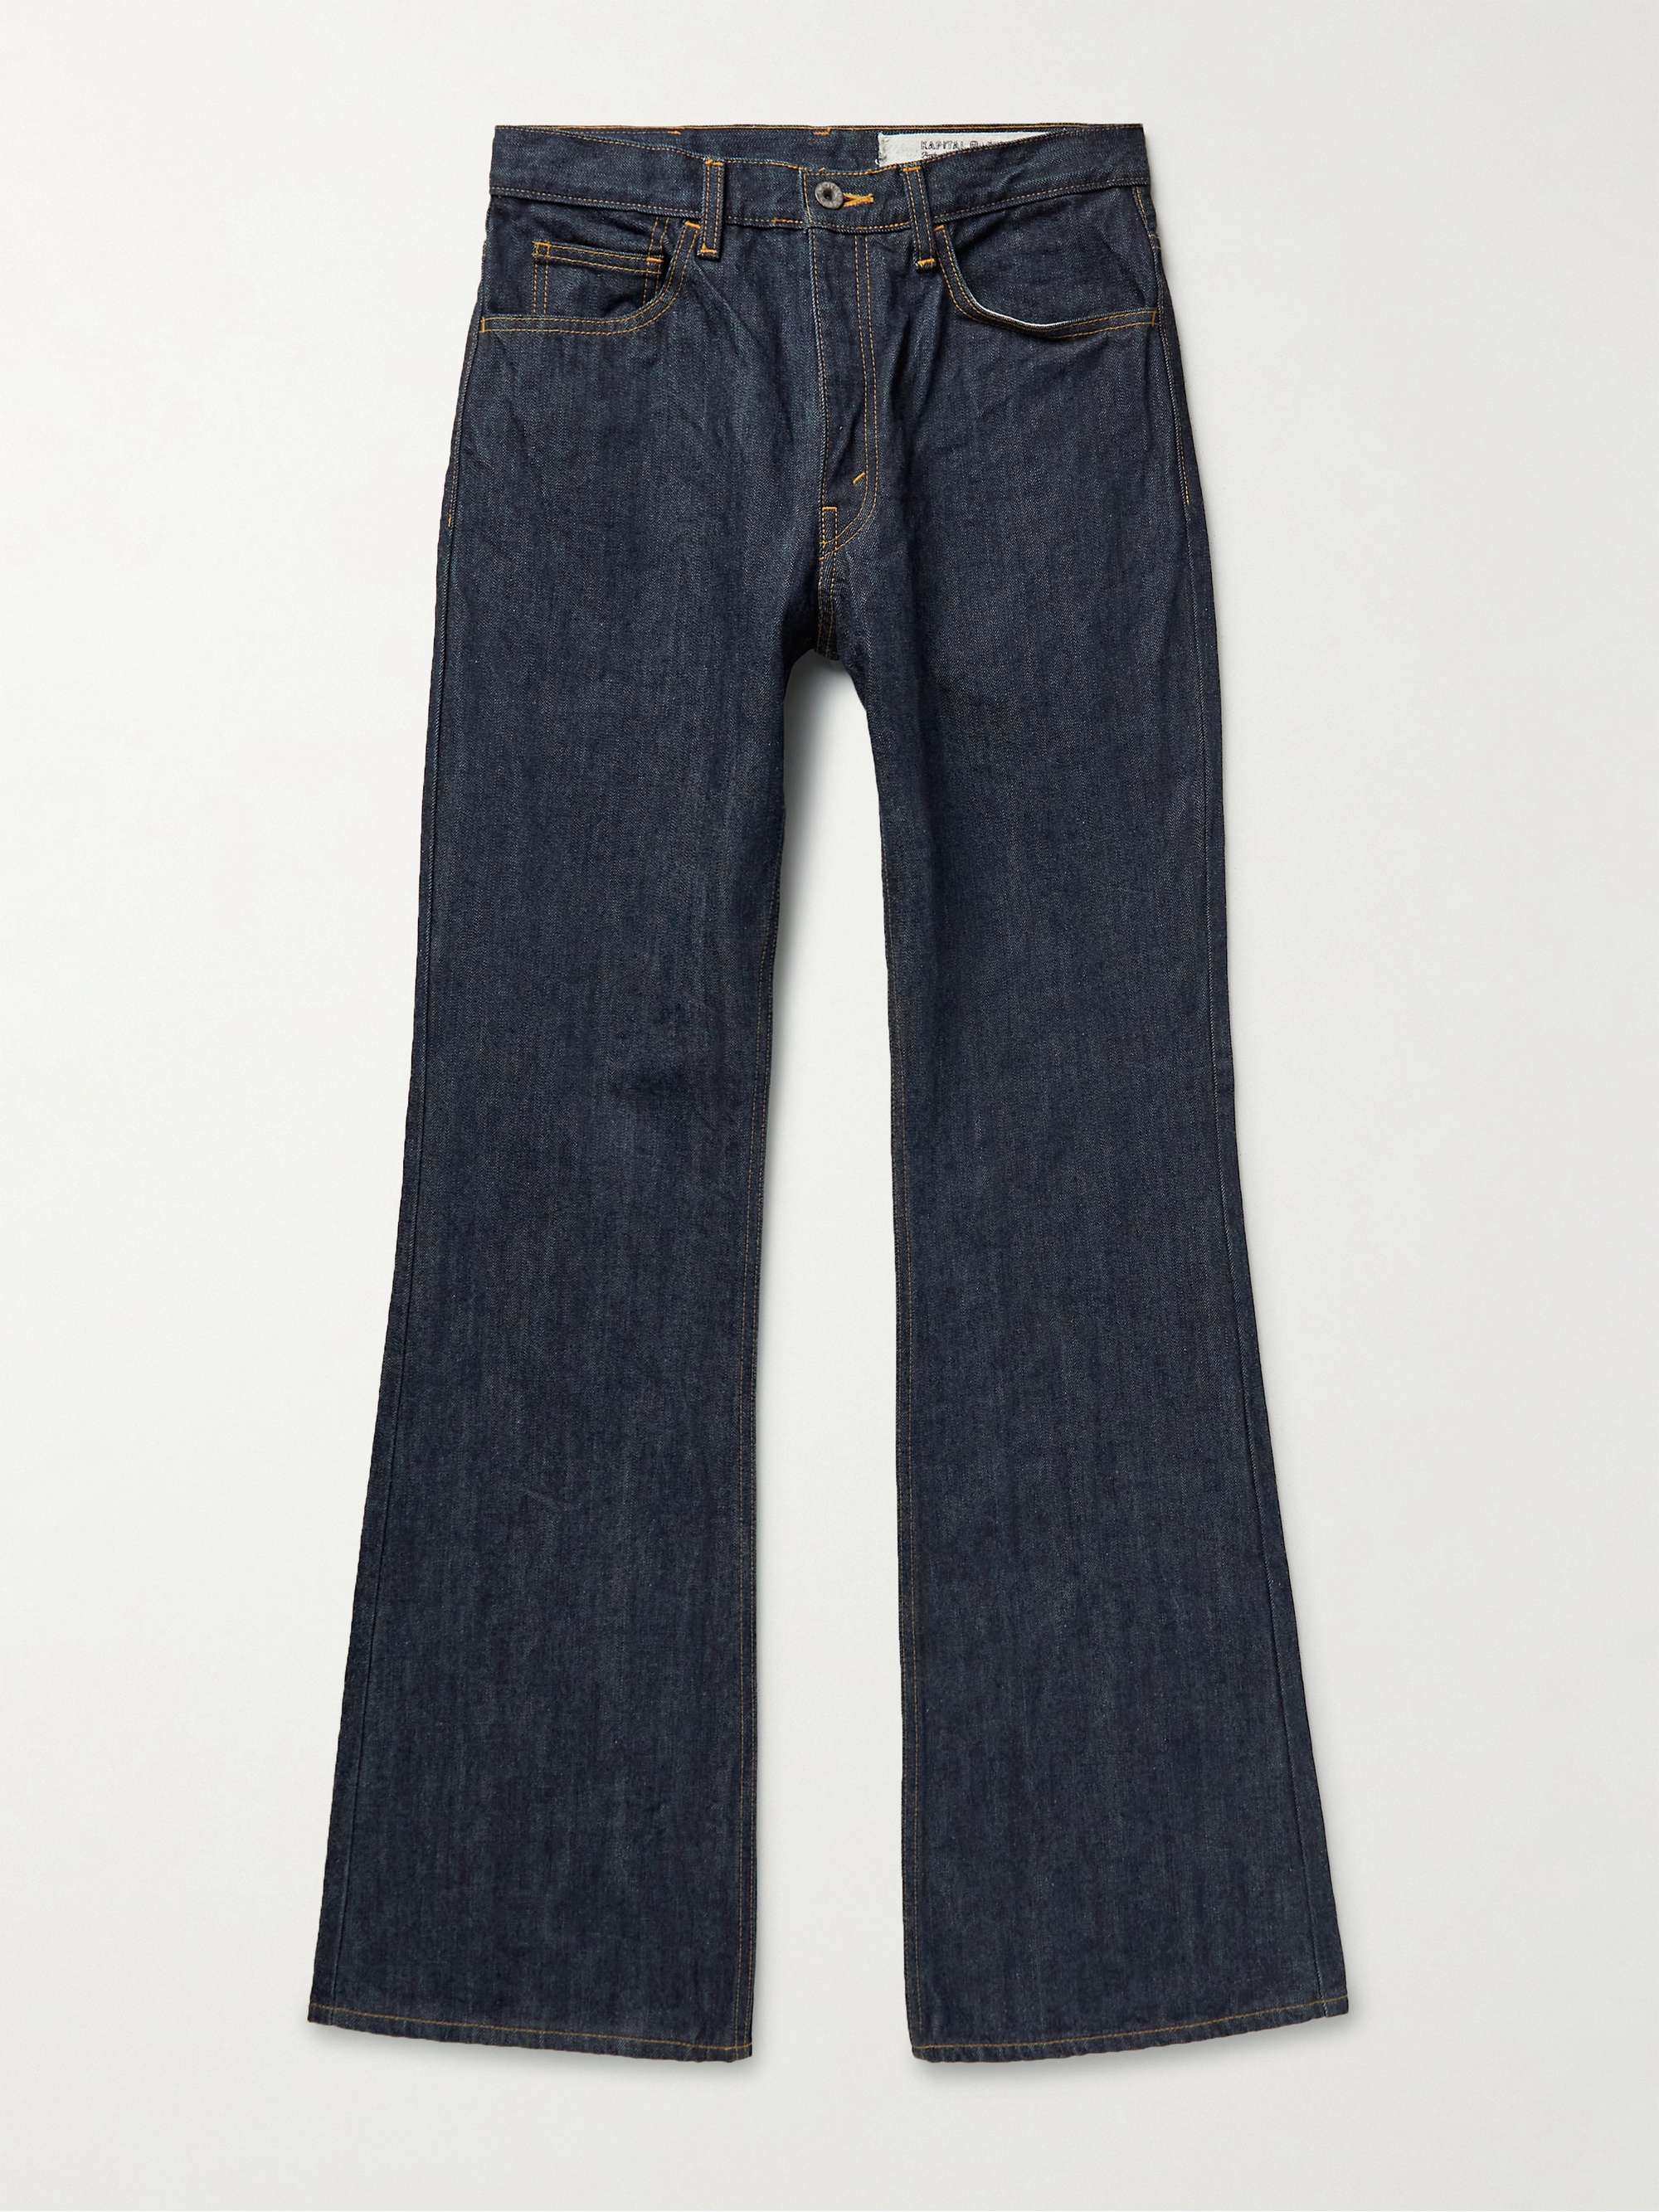 KAPITAL Slim-Fit Flared Jeans | MR PORTER